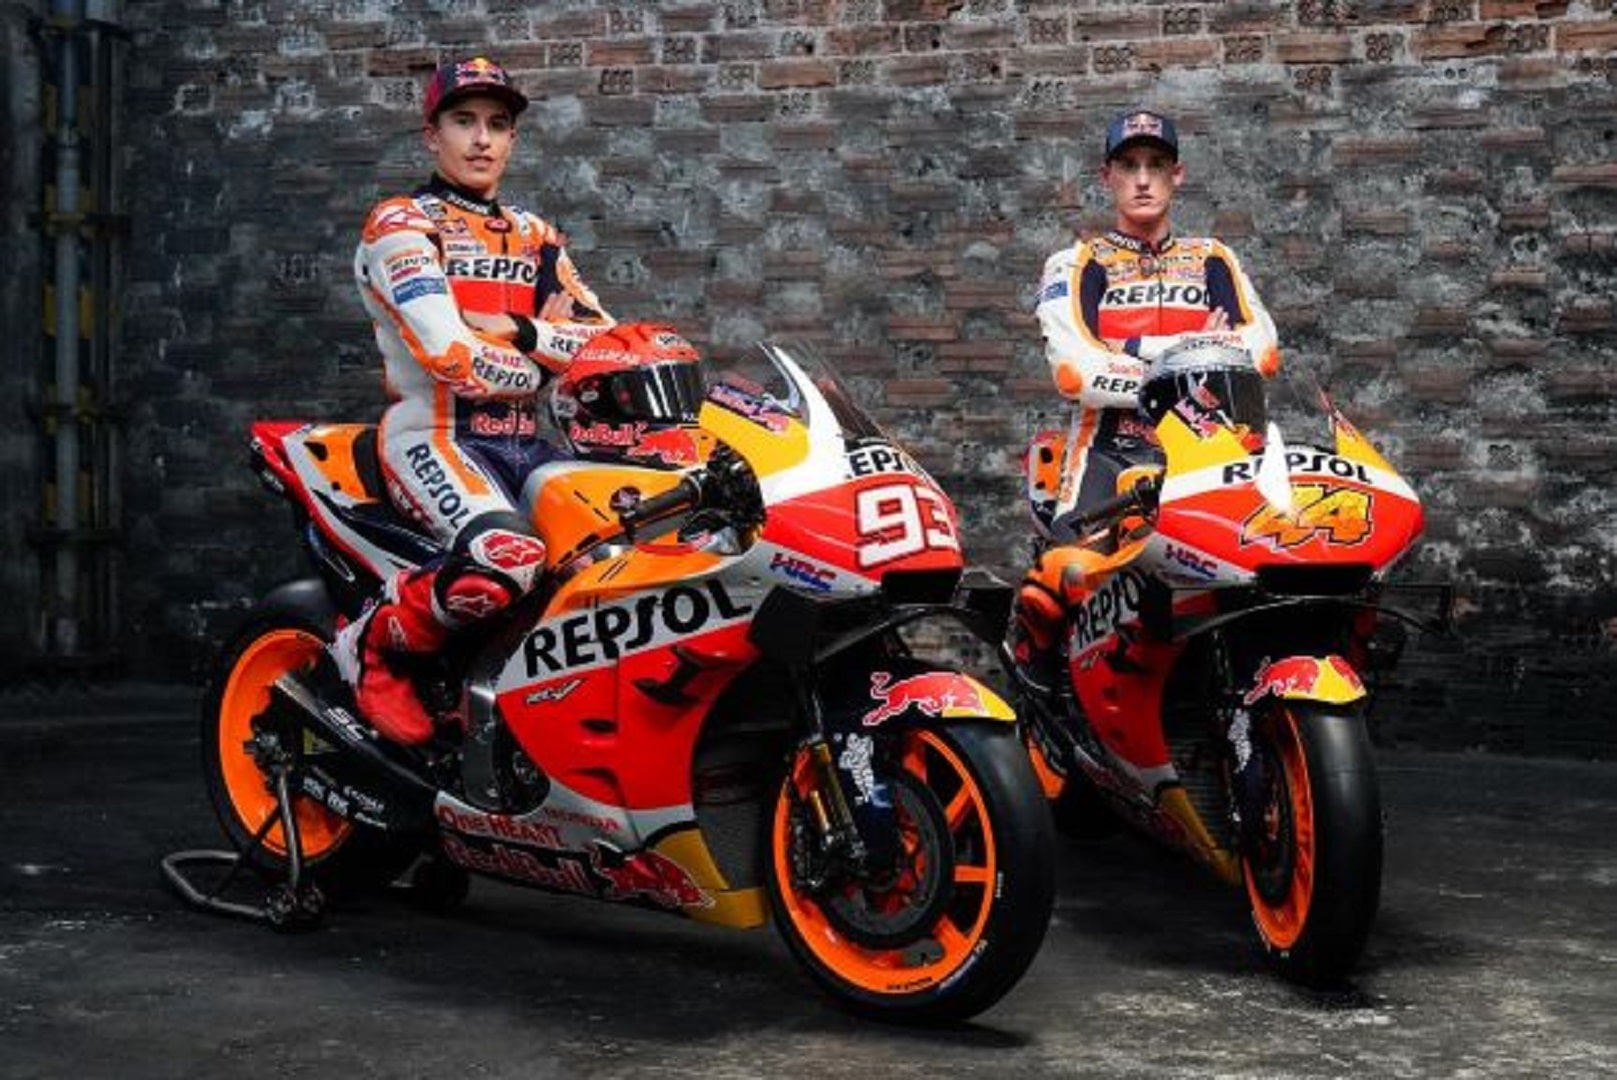 Crisi Honda in MotoGP; Marquez riuscirà a tirarla fuori dal baratro?